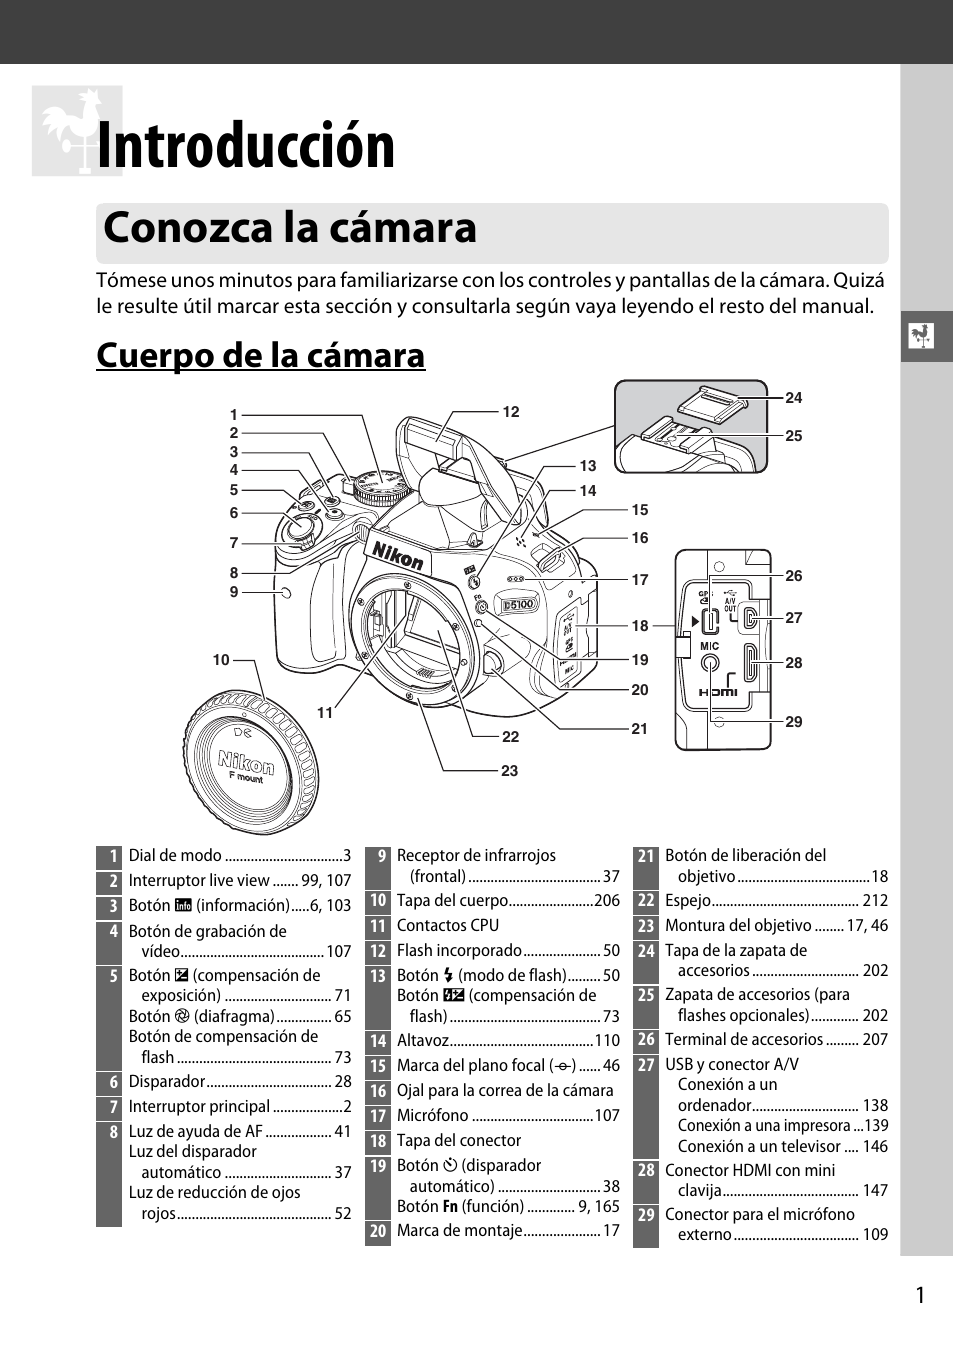 Introducción, Conozca la cámara, Cuerpo de la cámara | Nikon D5100 Manual del usuario | Página 19 / | Original